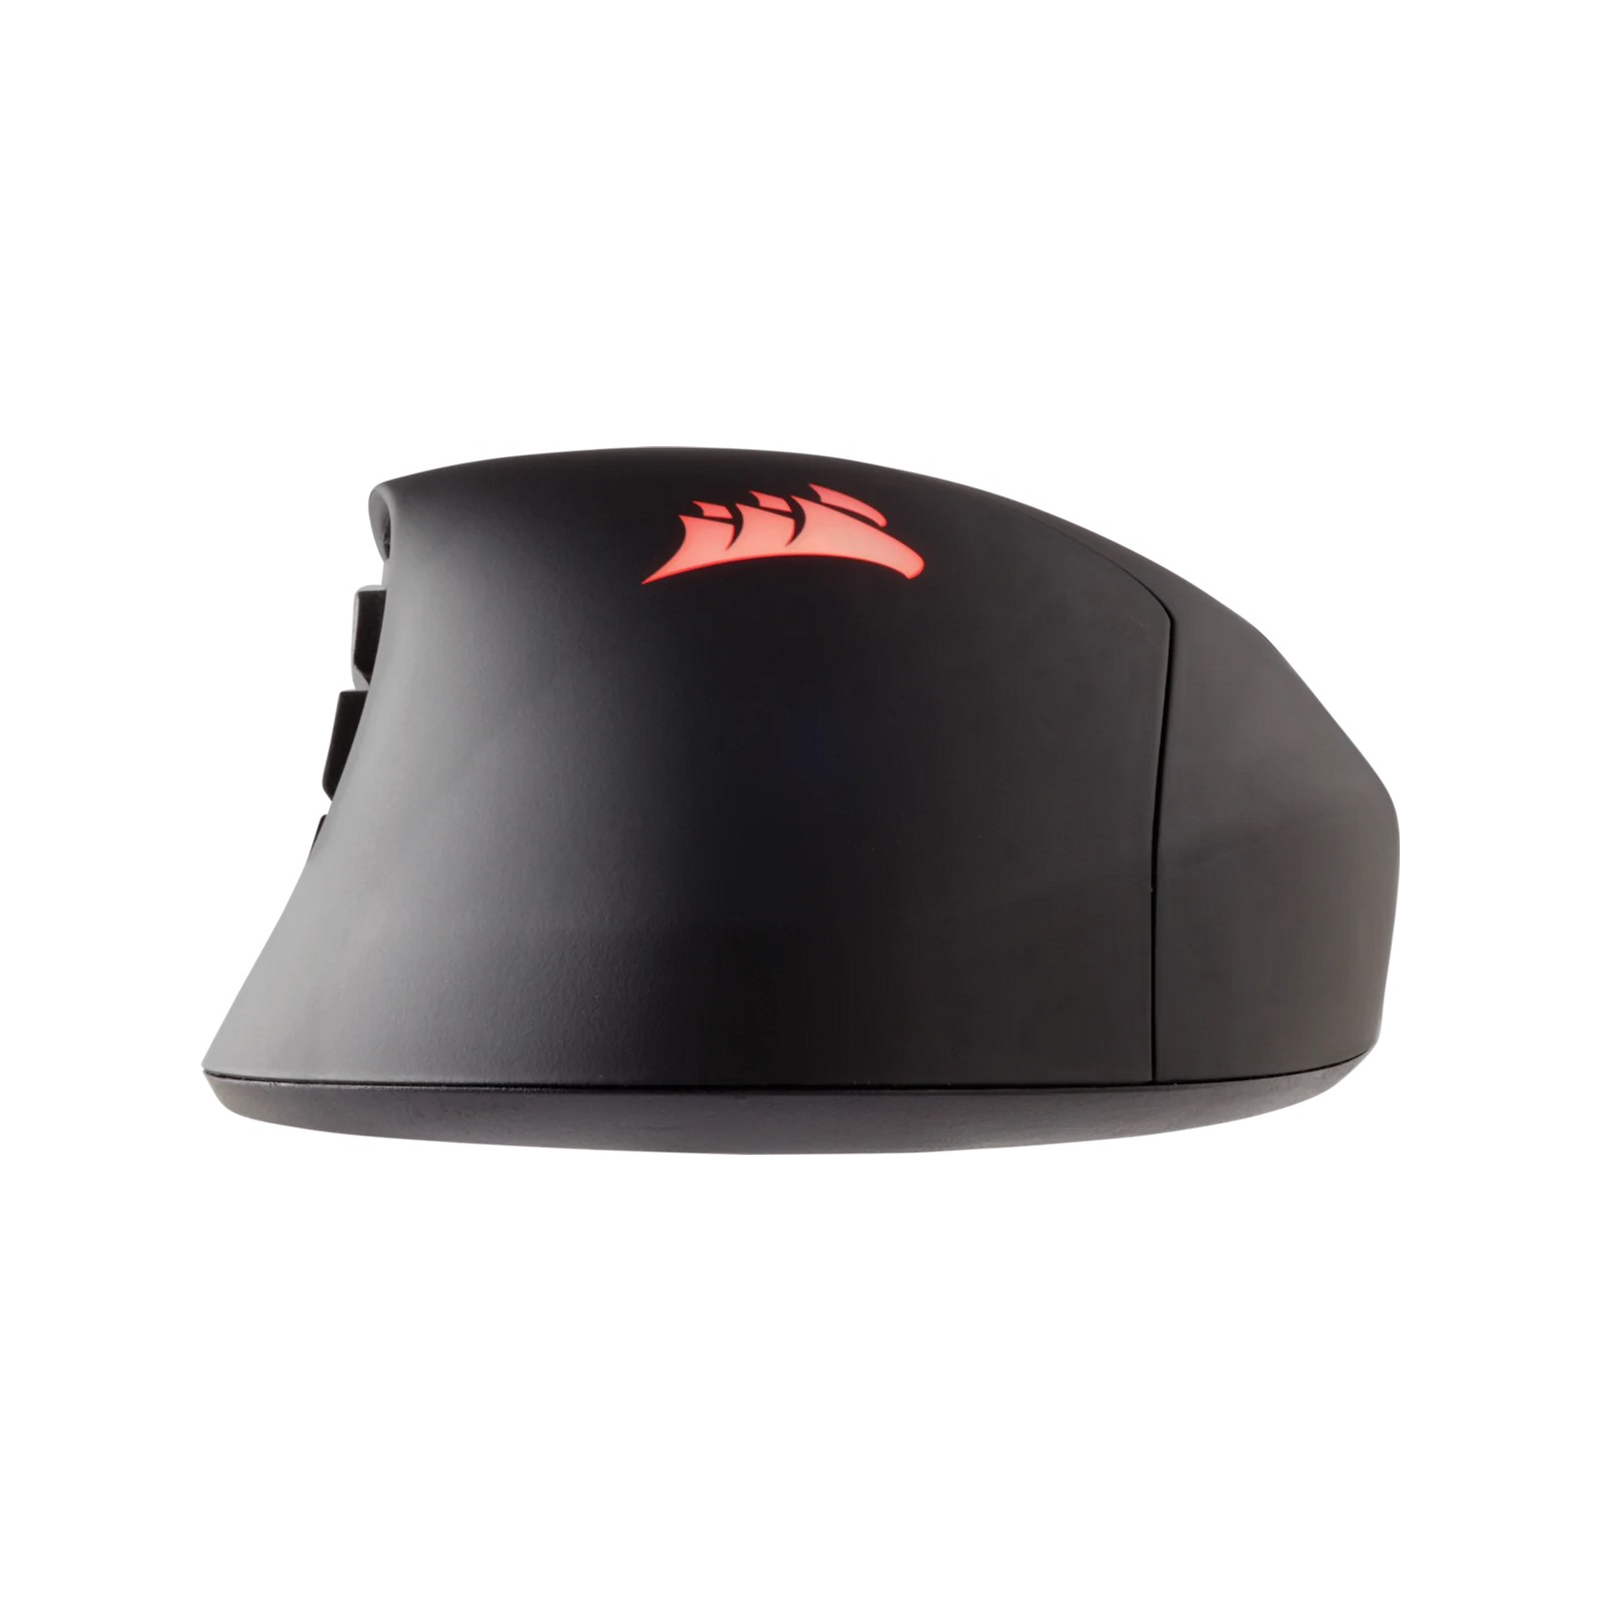 Мышка Corsair Scimitar RGB Elite USB Black (CH-9304211-EU) изображение 3